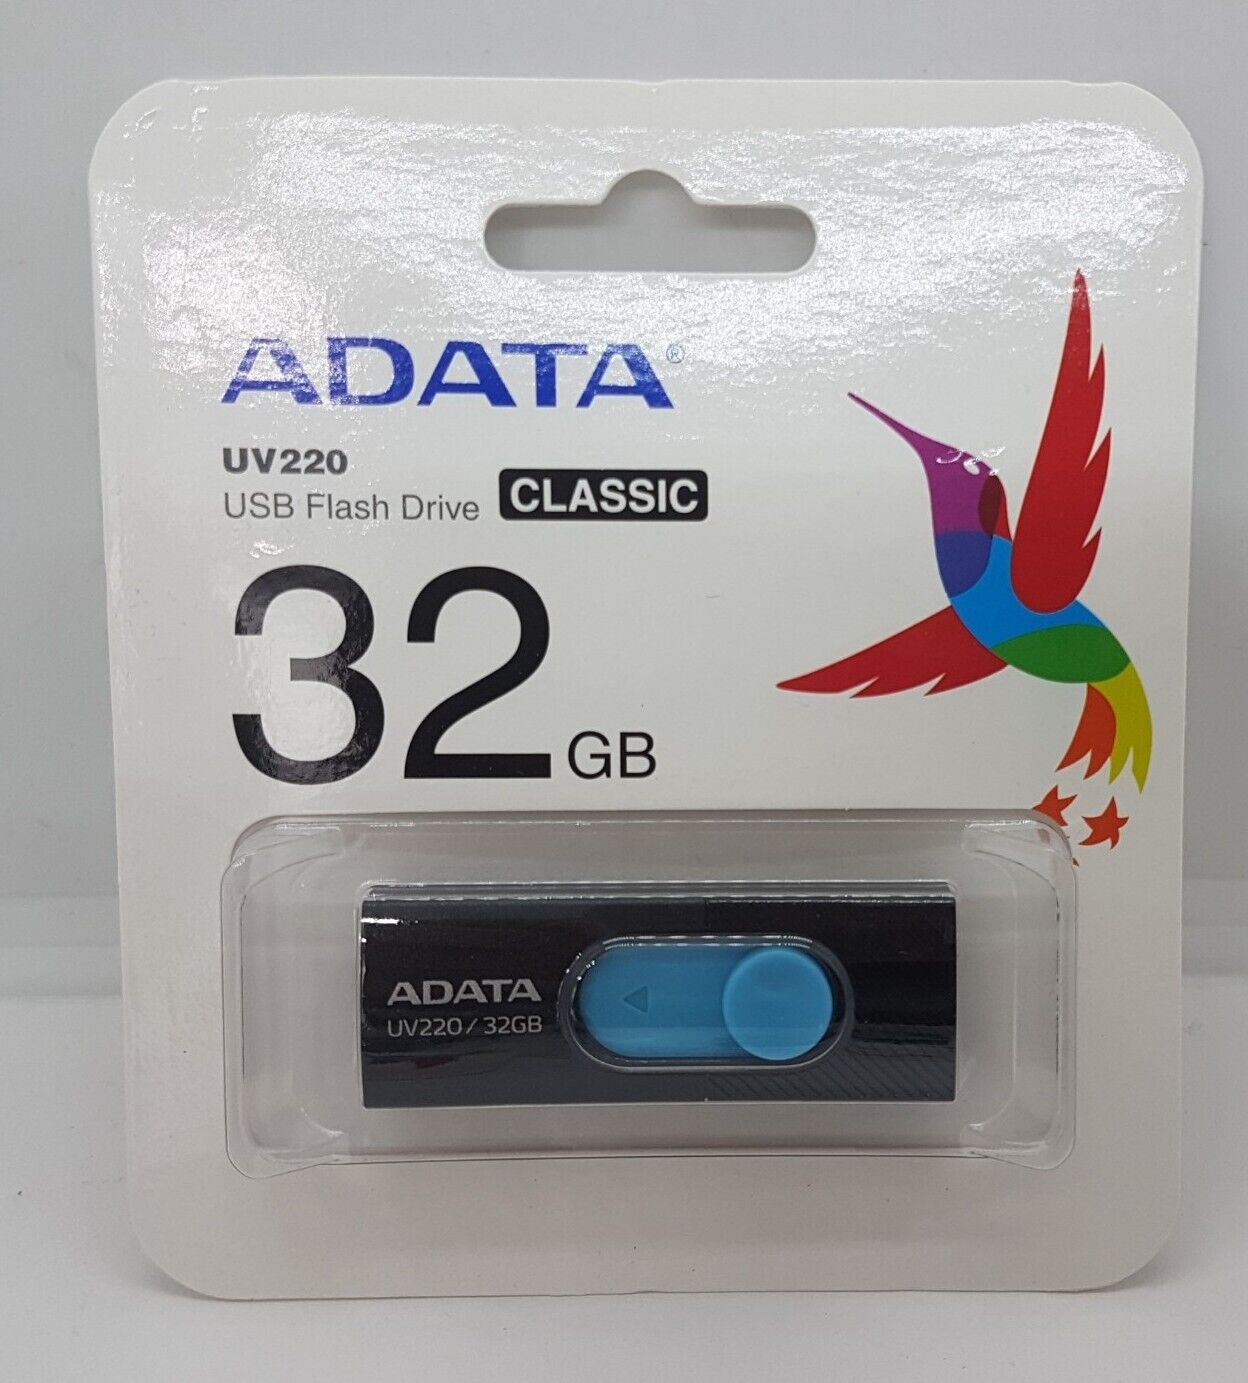 NEW Lot Of 10 ADATA UV220 33GB 2.0 FLASH Drive